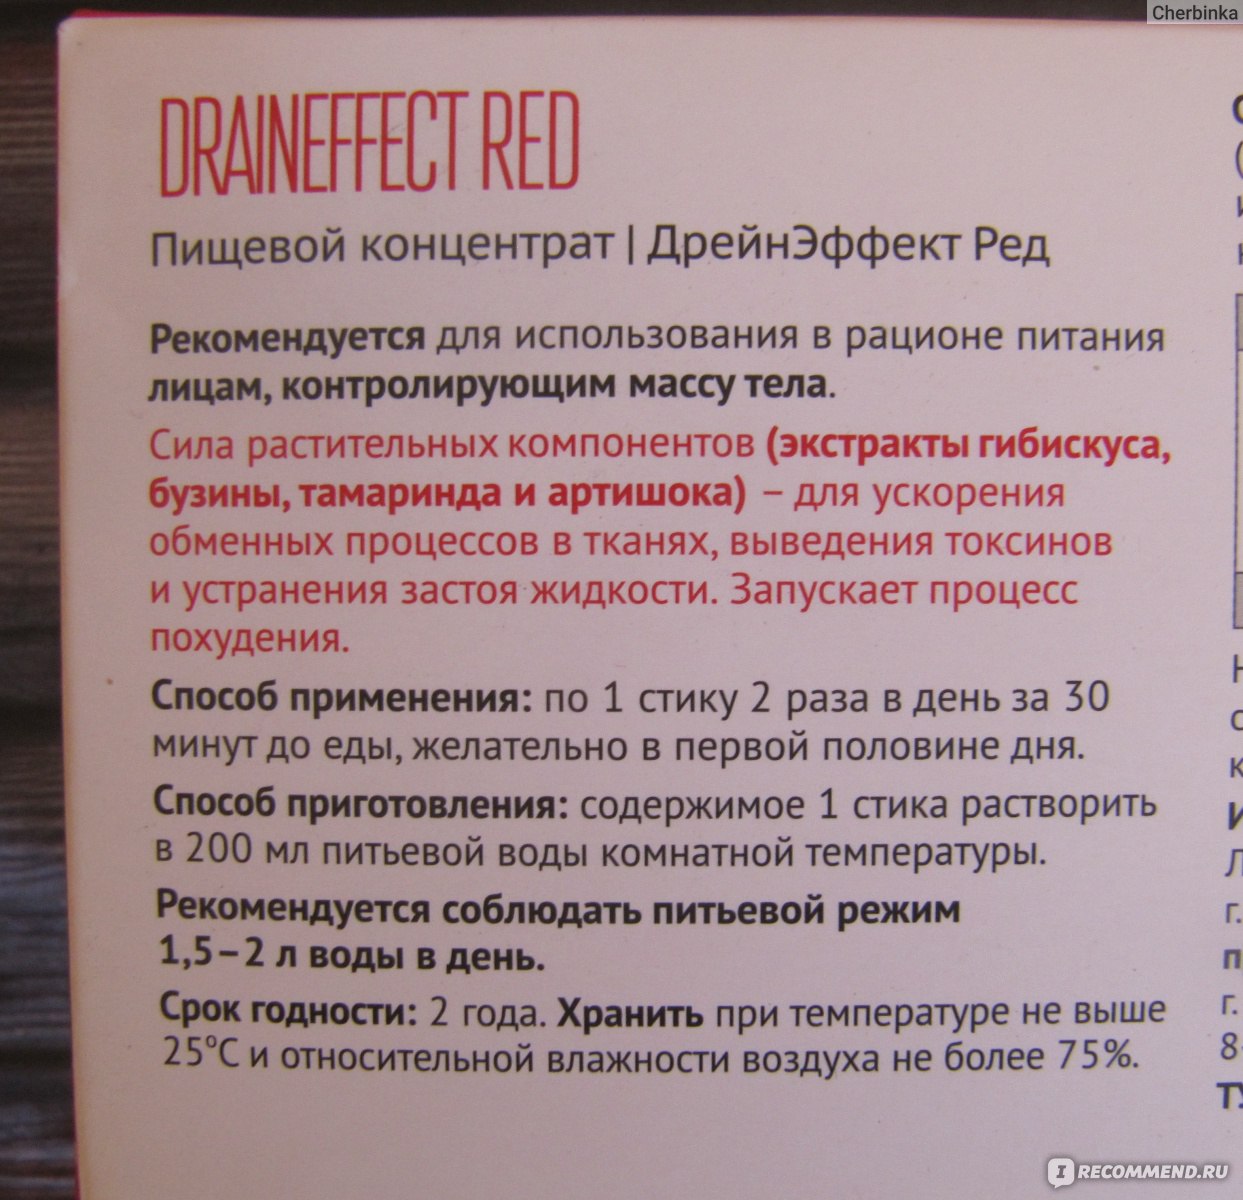 Draineffect red отзывы. Драйн эффект для похудения производитель. Драйн эффект для похудения противопоказания. Драйн эффект красный nl. Drain Effect Red инструкция.